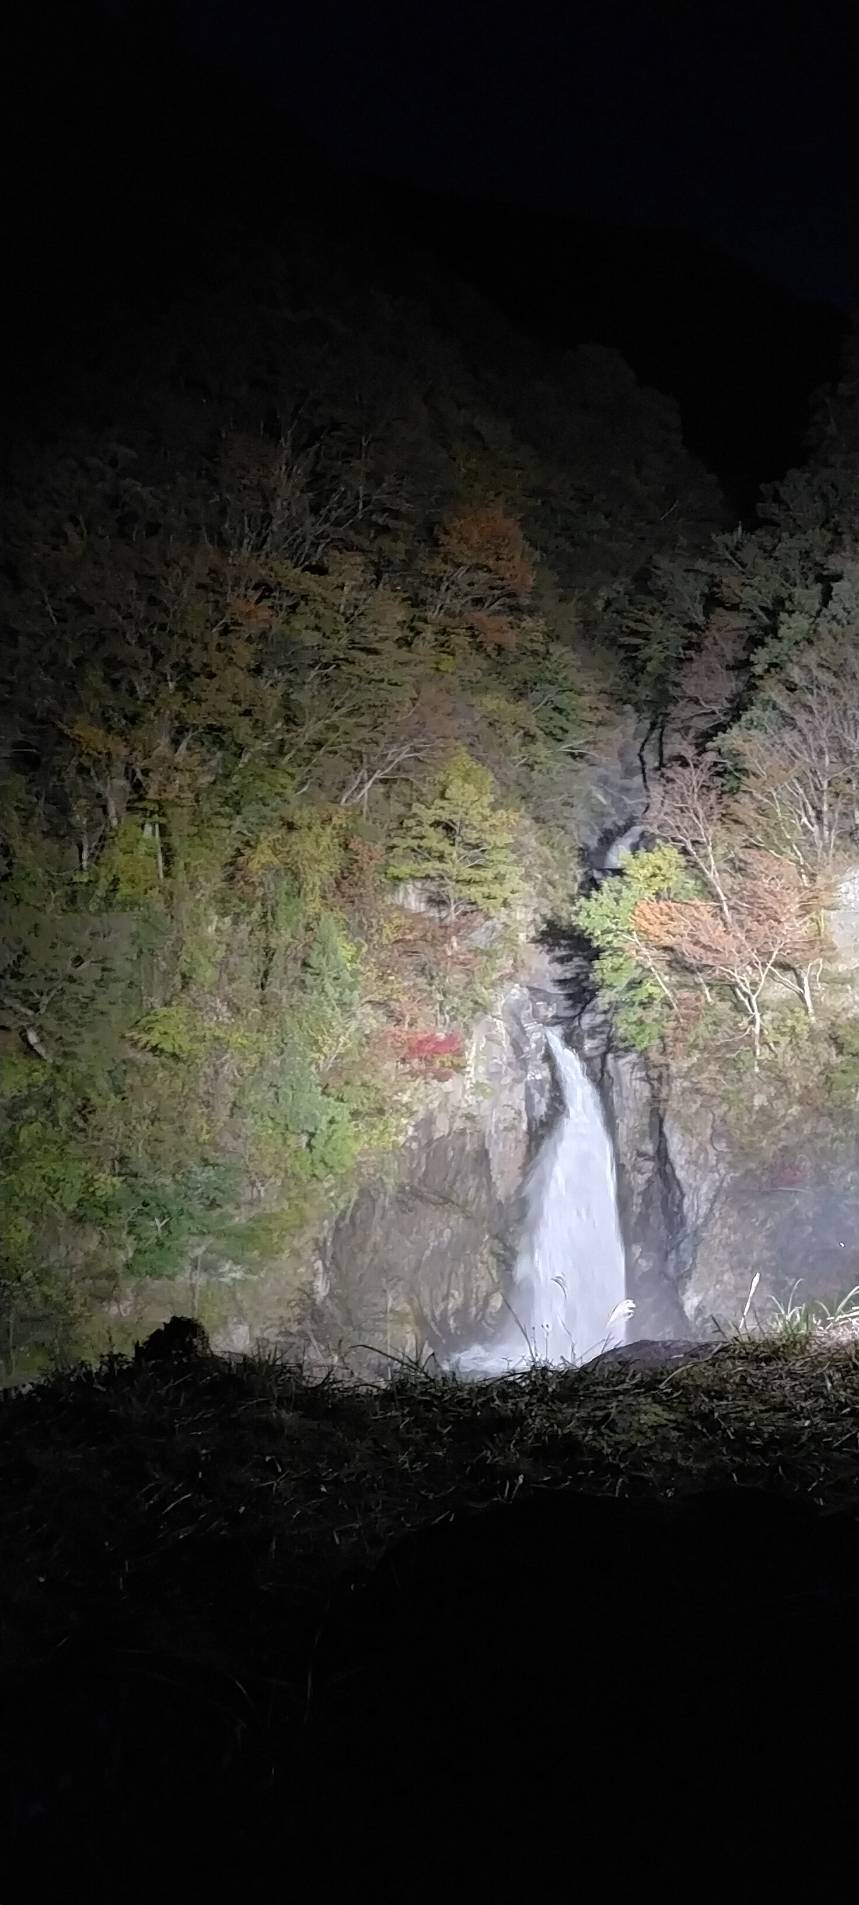 赤水の滝ライトアップ2021年11月8日撮影